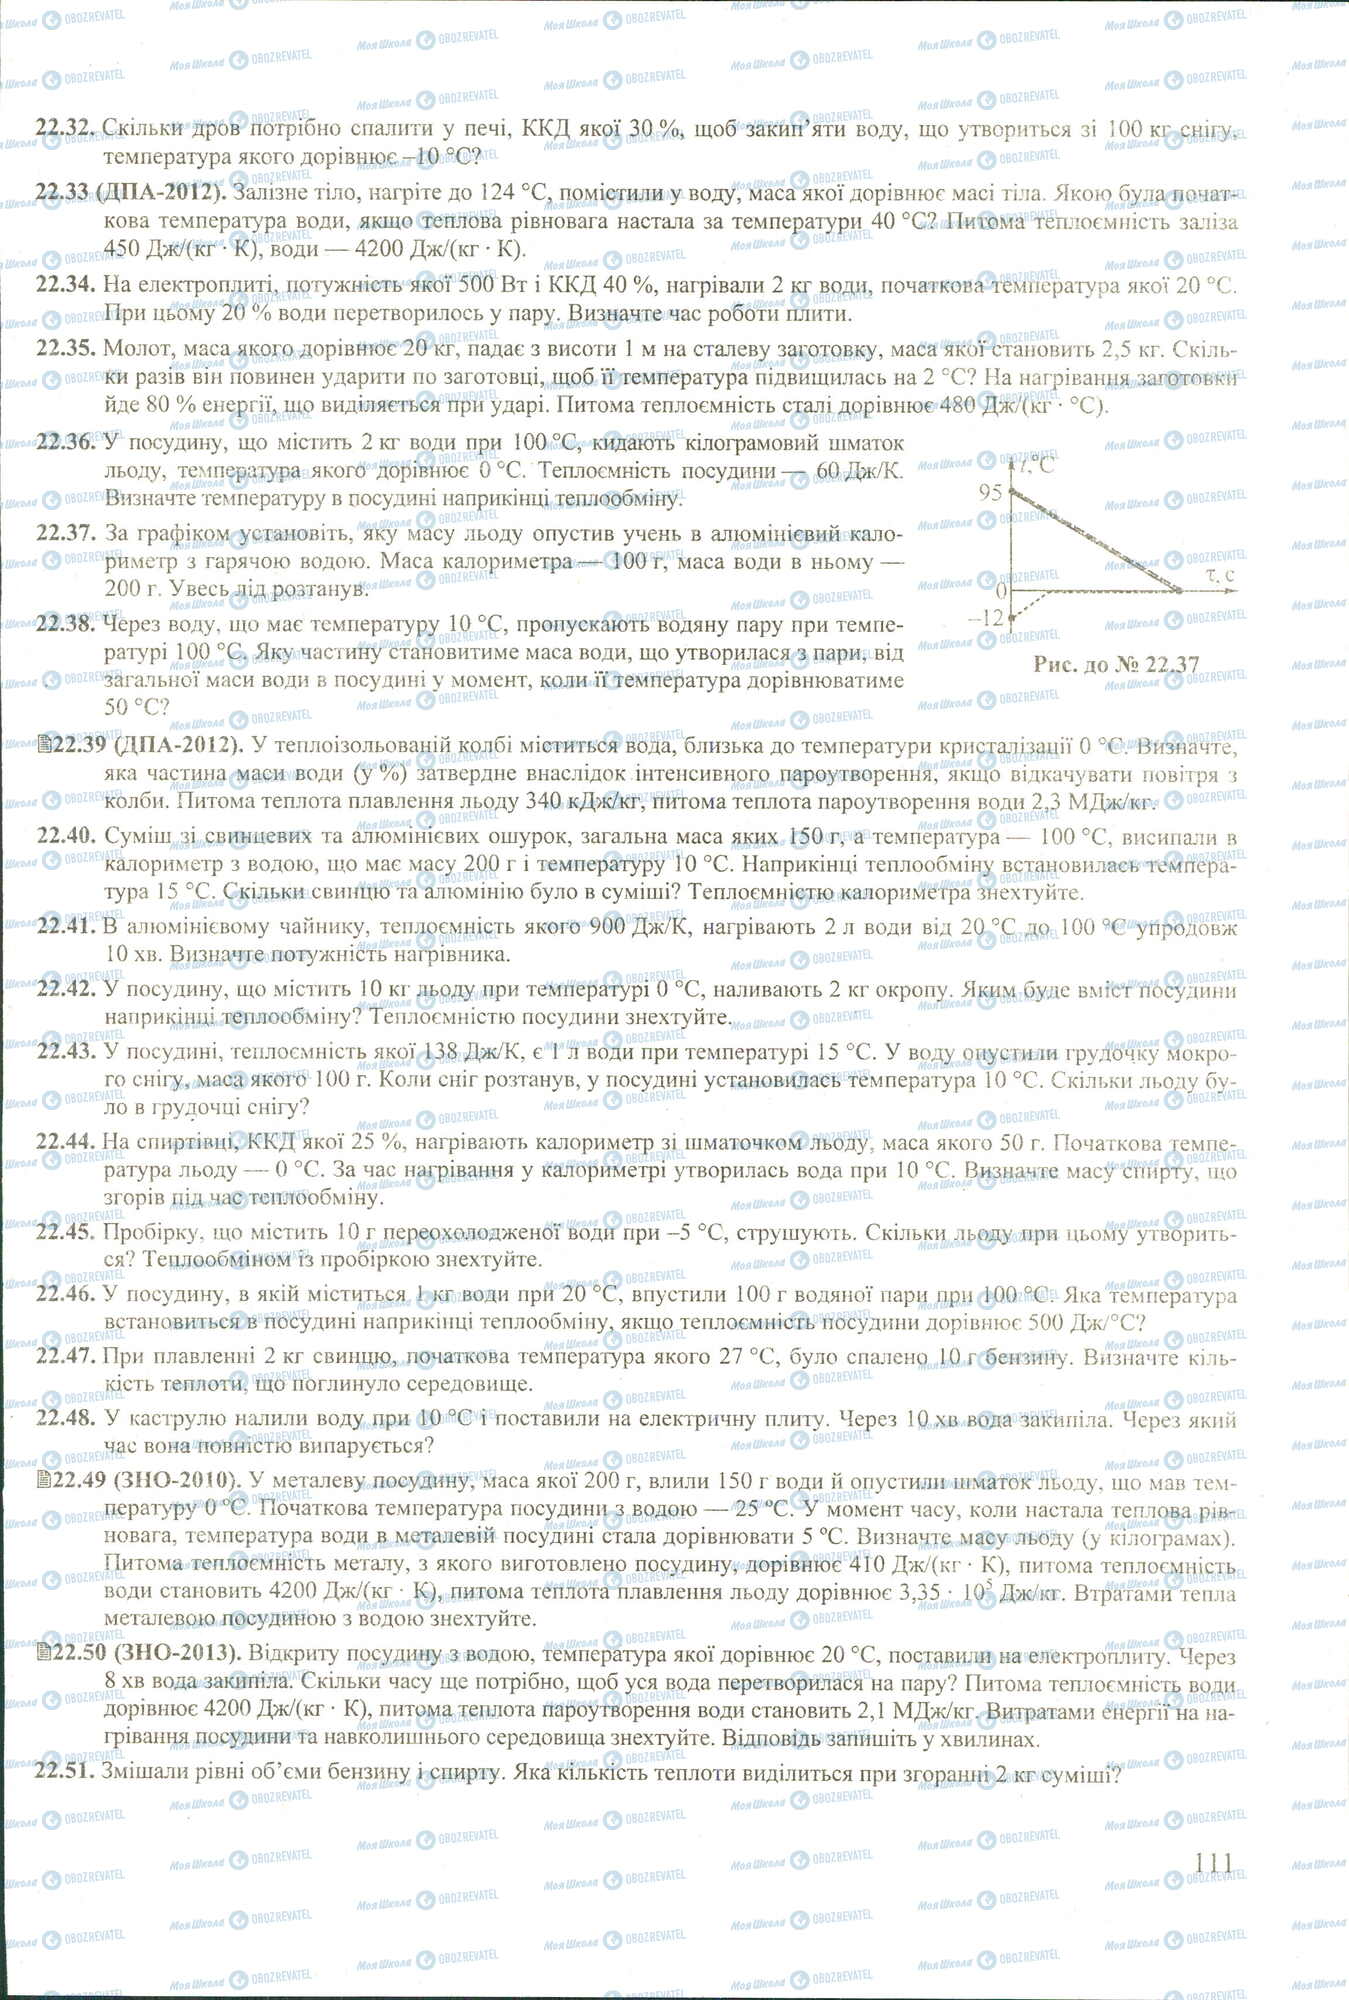 ЗНО Физика 11 класс страница 32-51